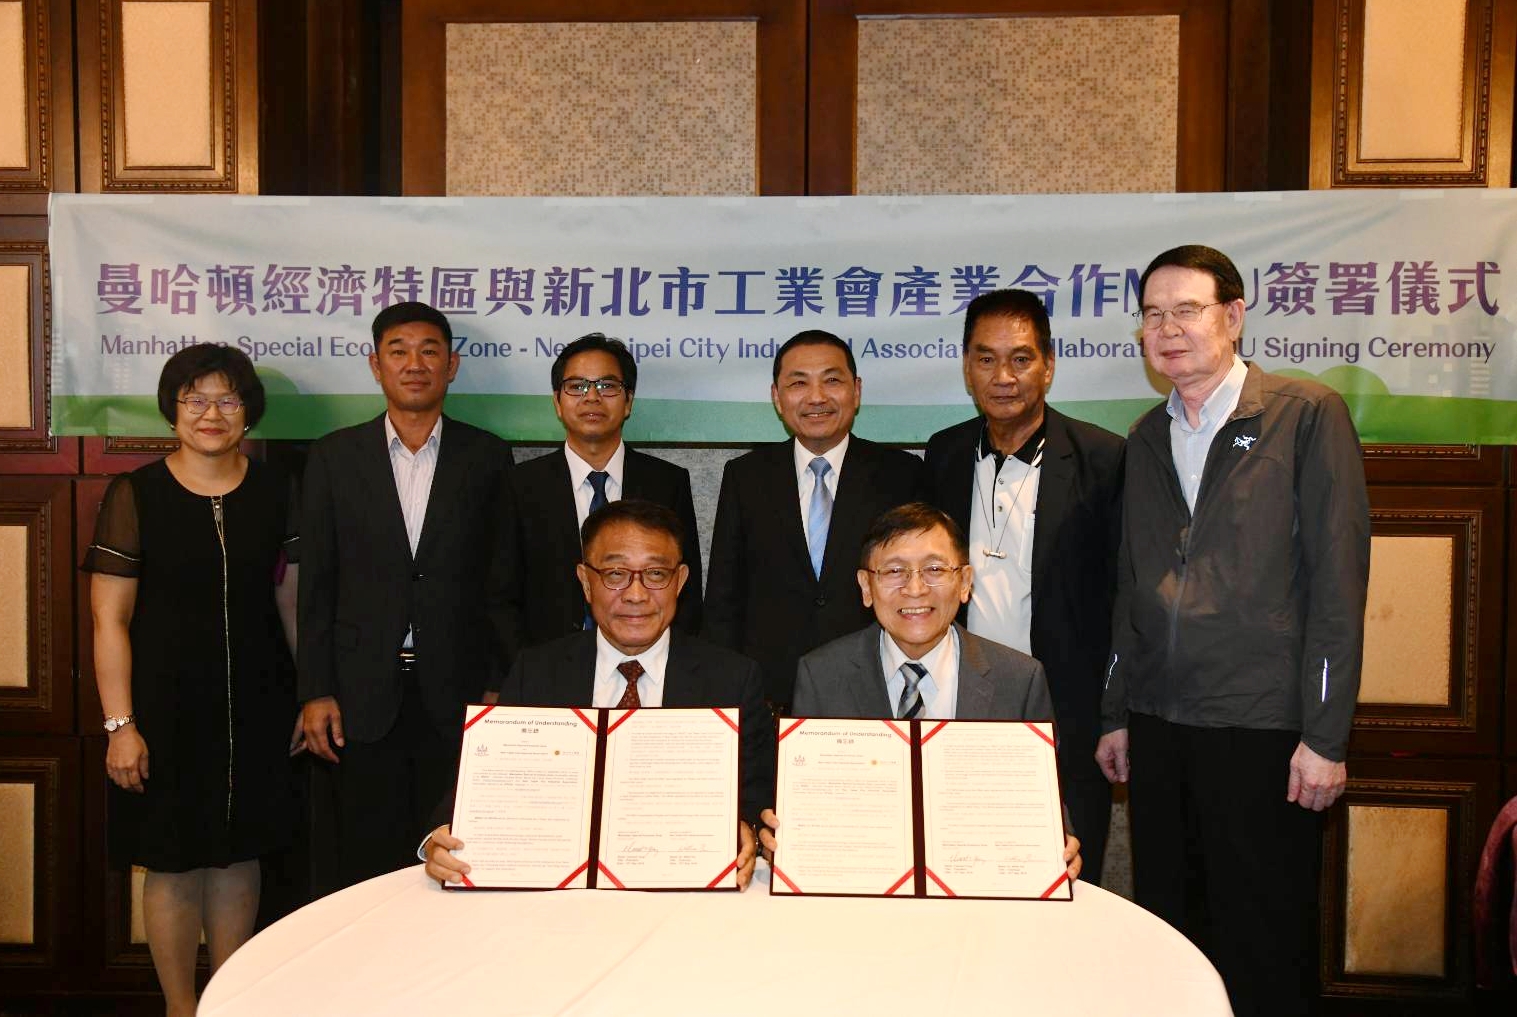 侯友宜市長見證新北市工業會與柬埔寨曼哈頓經濟特區簽署MOU。